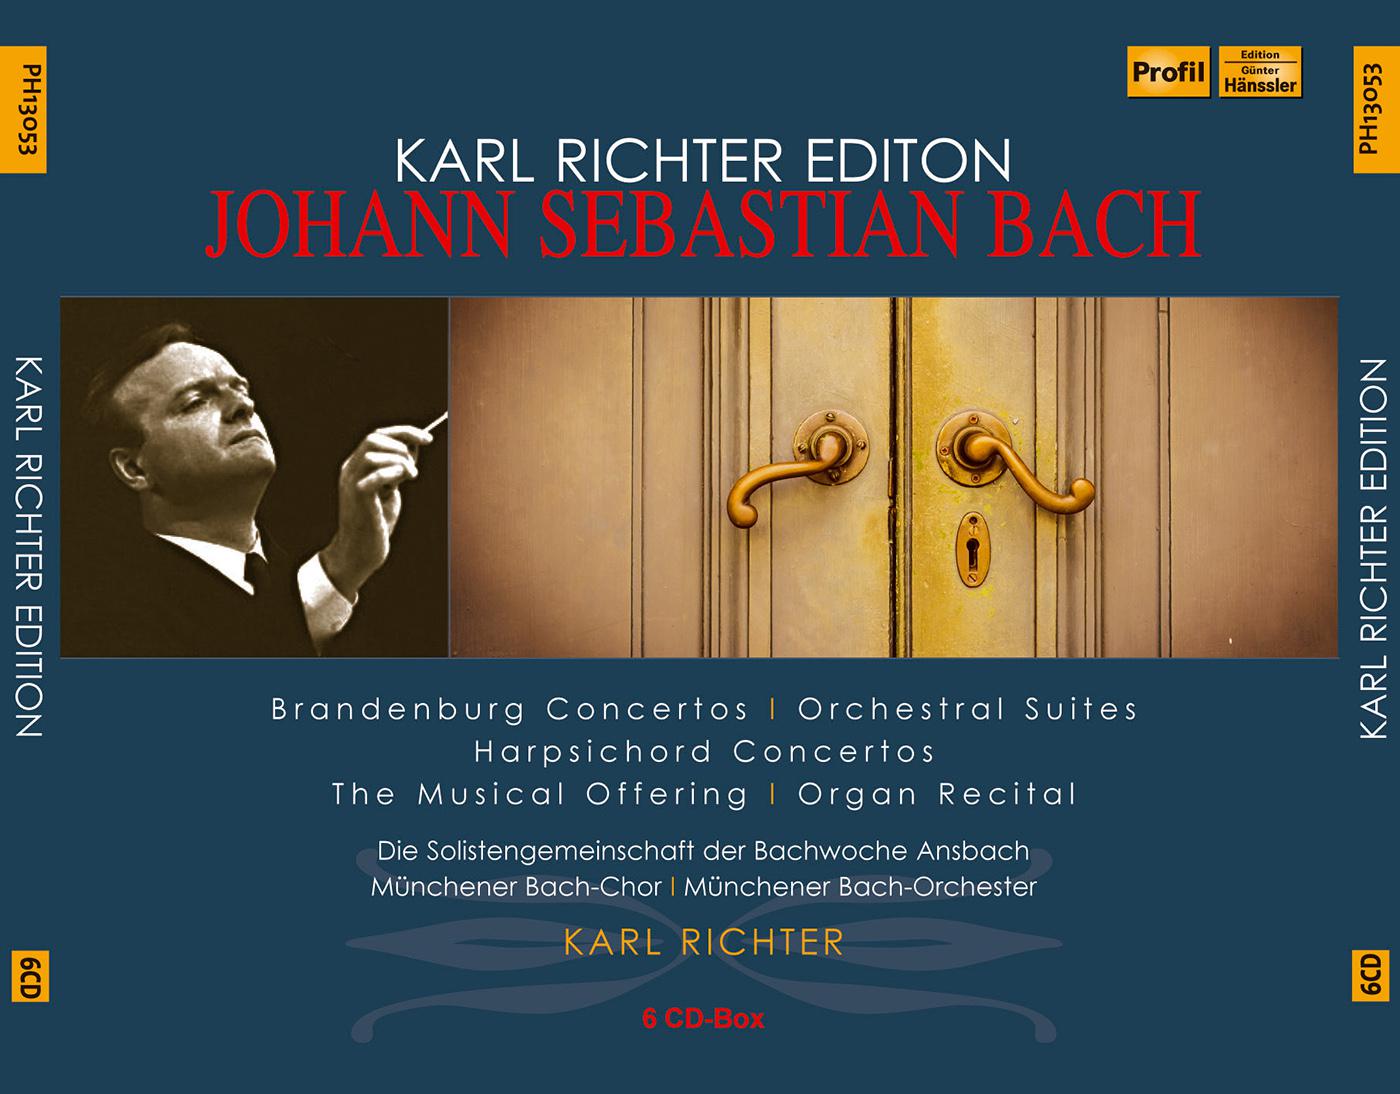 BACH, J.S.: Brandenburg Concertos Nos. 1-6 / Overtures (Suites) Nos. 1-4 / Musical Offering / Keyboard Music (K. Richter) (1954-1963)